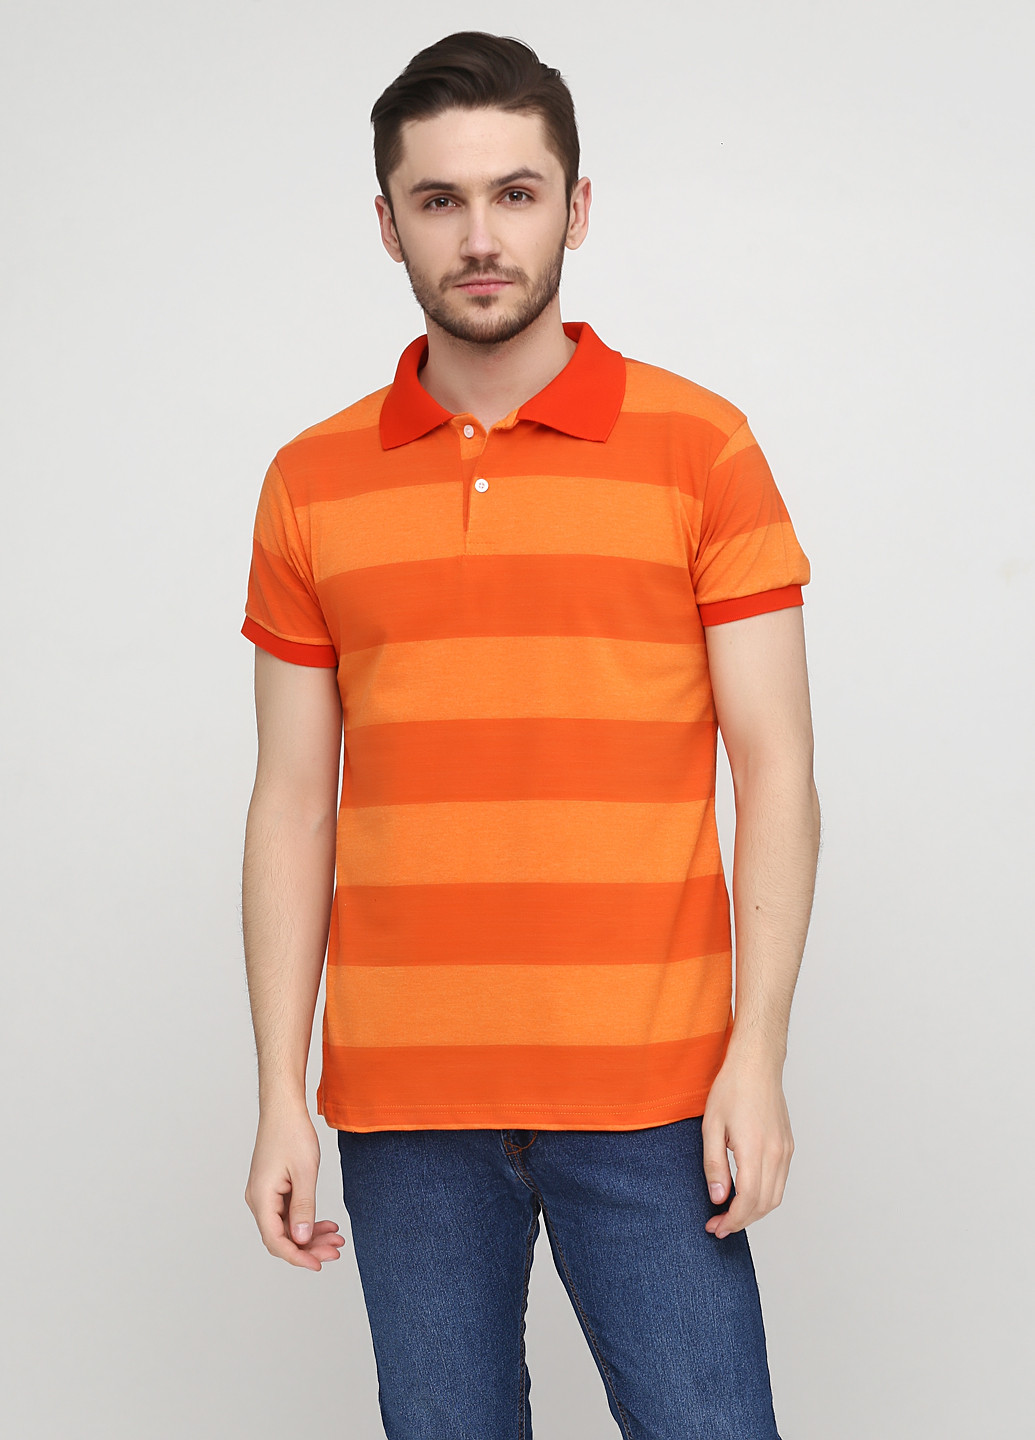 Оранжевая футболка-поло для мужчин Chiarotex в полоску